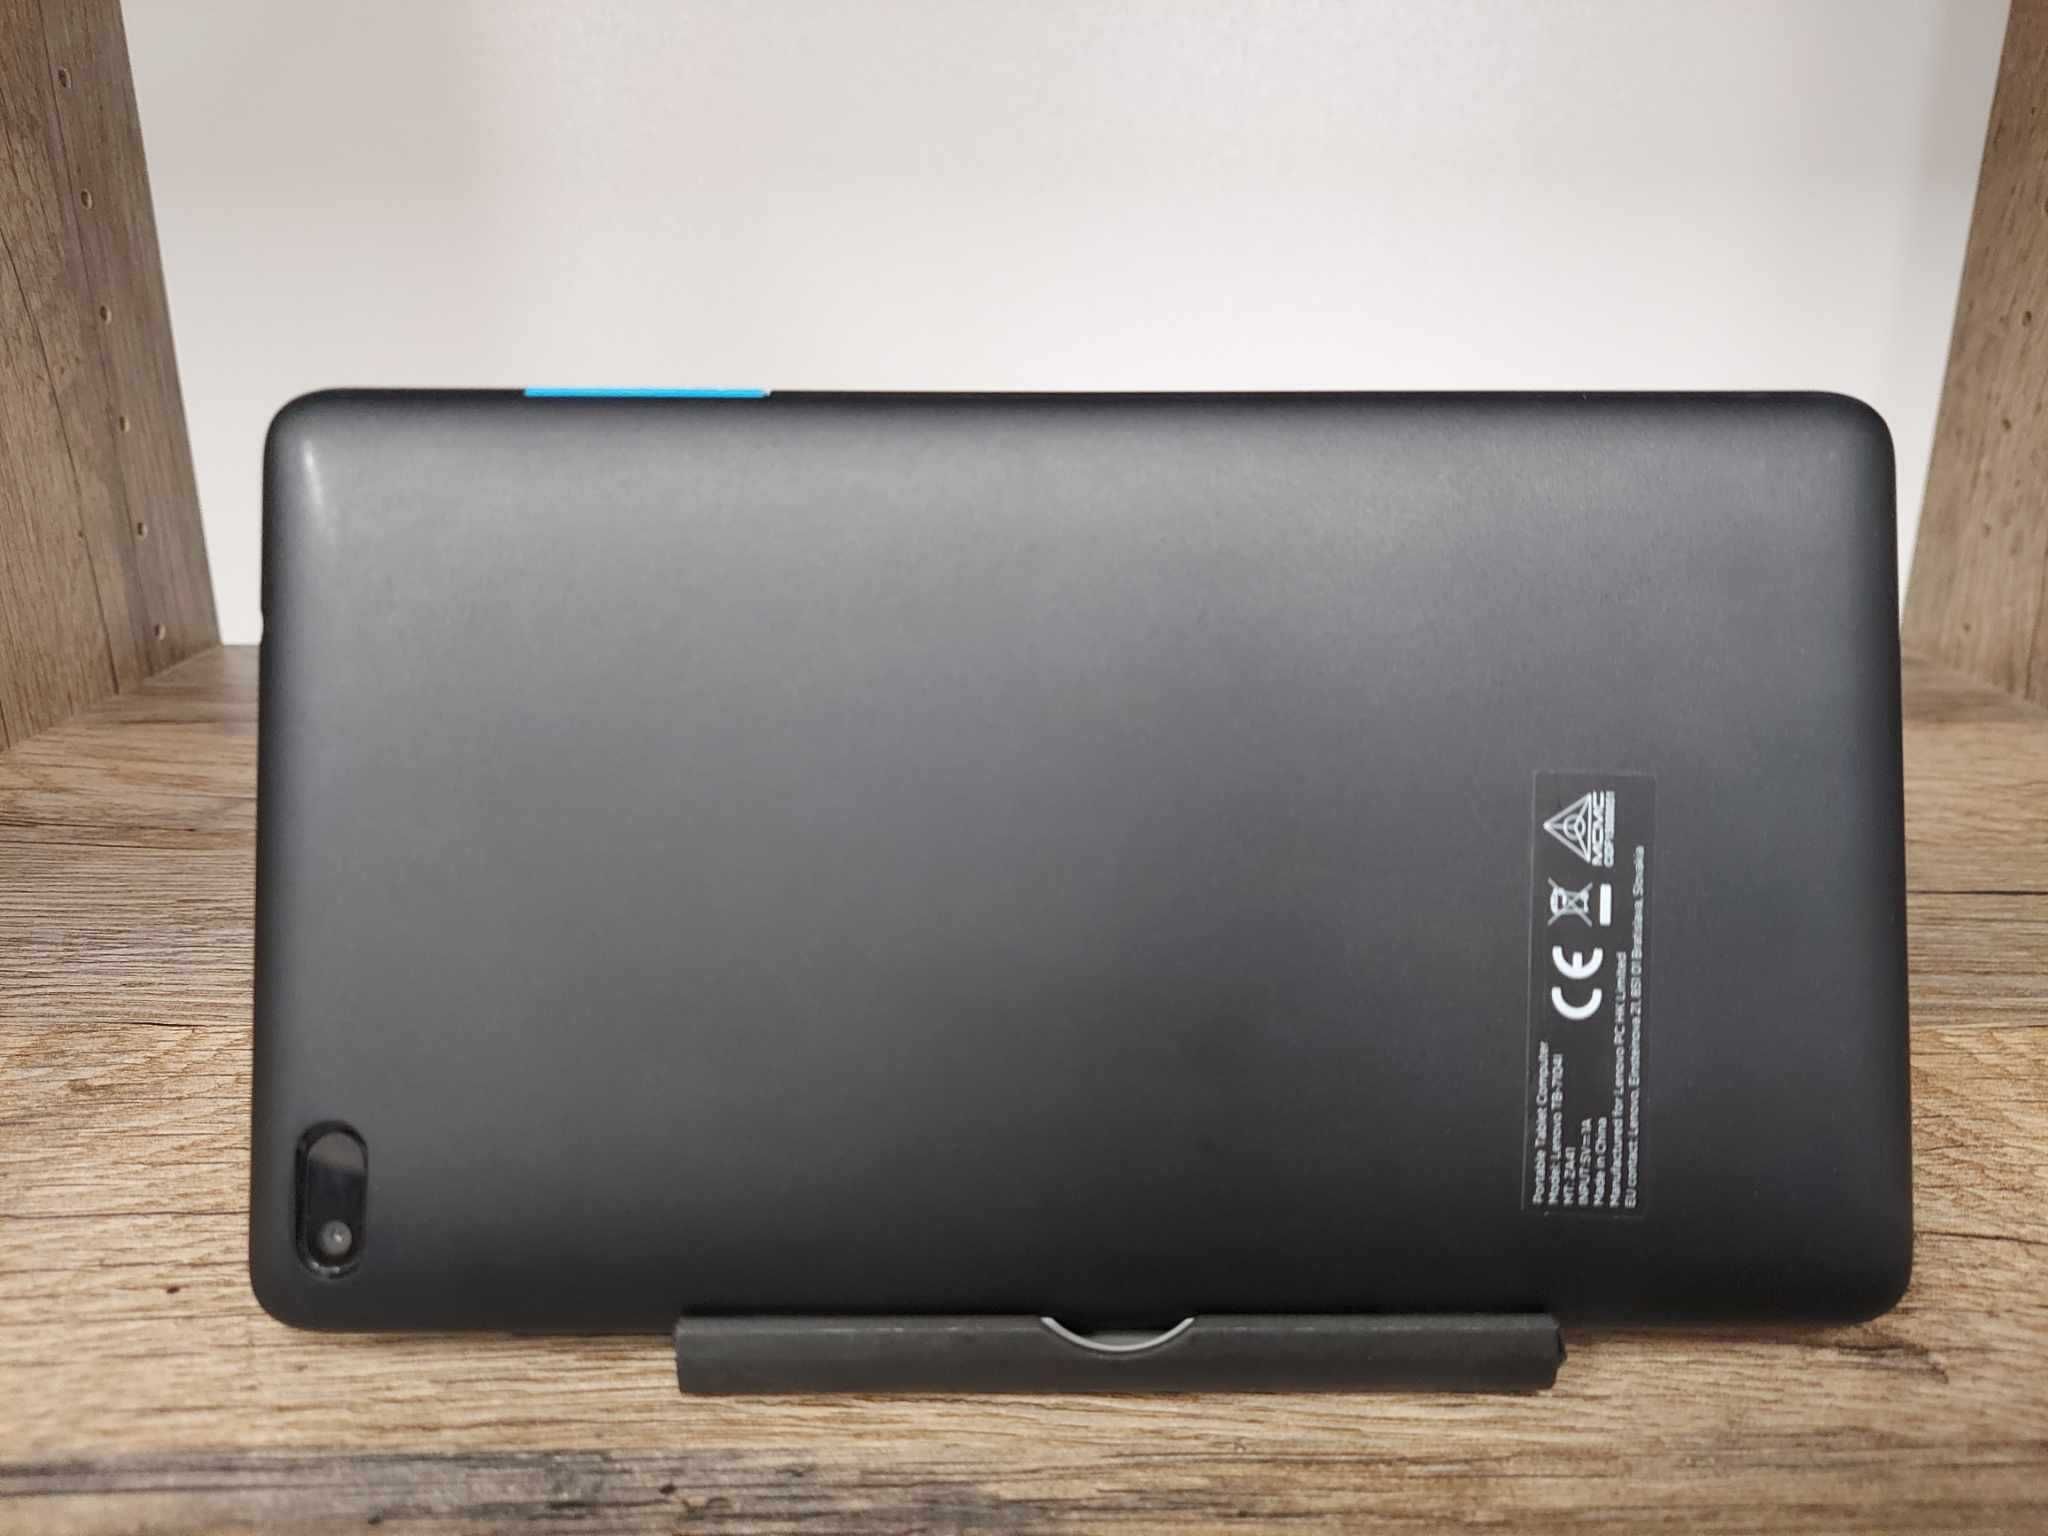 Tablet Lenovo TB-7104L 1/16GB czarny stan bdb gwarancja